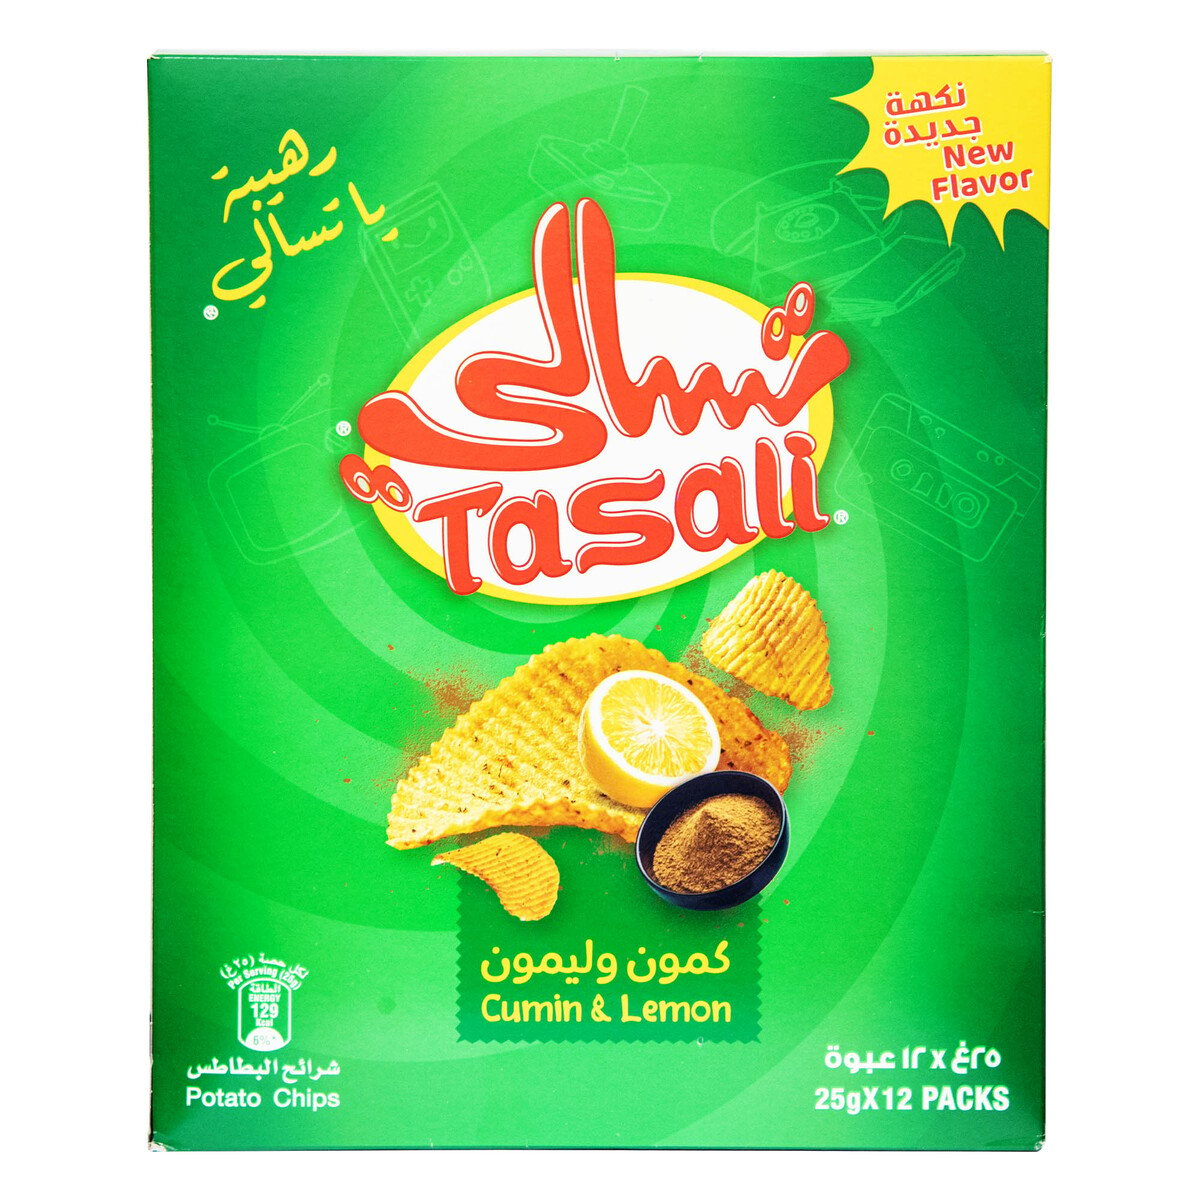 Tasali Cumin & Lemon Potato Chips 12 x 25g